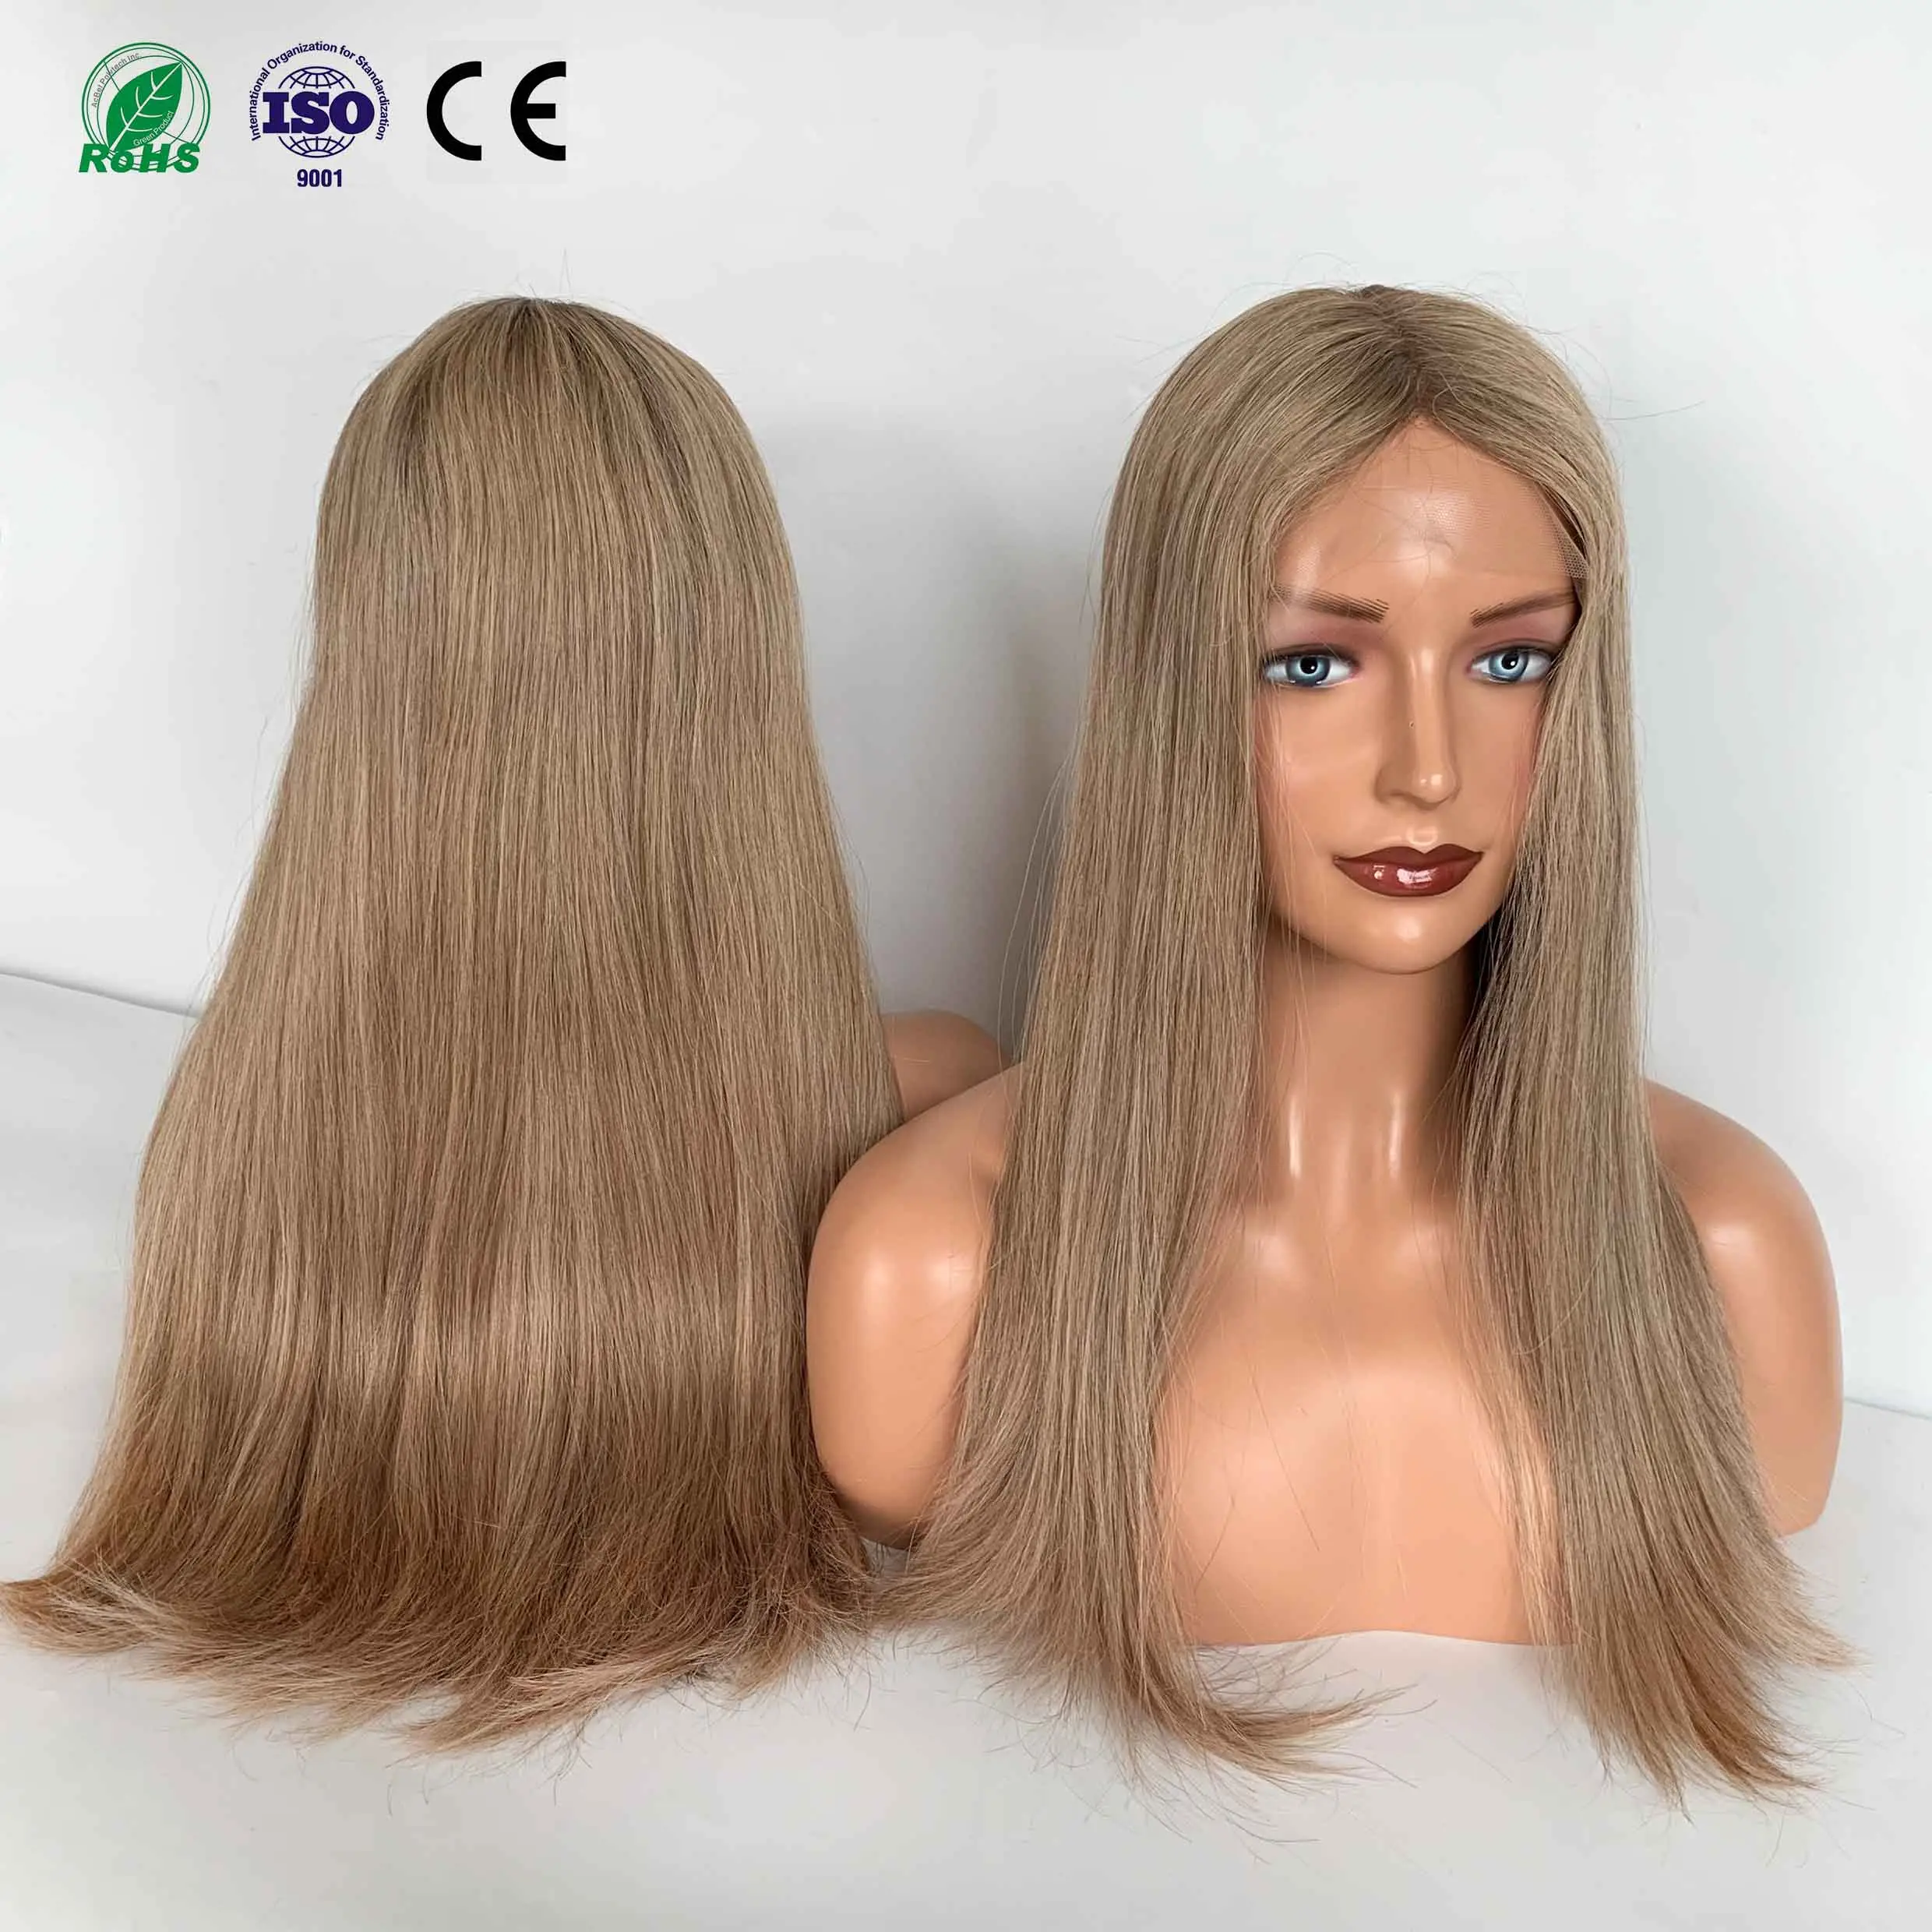 Fasimei Raw Cuticle Aligned Human Hair Productsブロンドカラーヨーロッパの人間の髪の毛のかつら通気性のあるユダヤ人のかつらブロンド